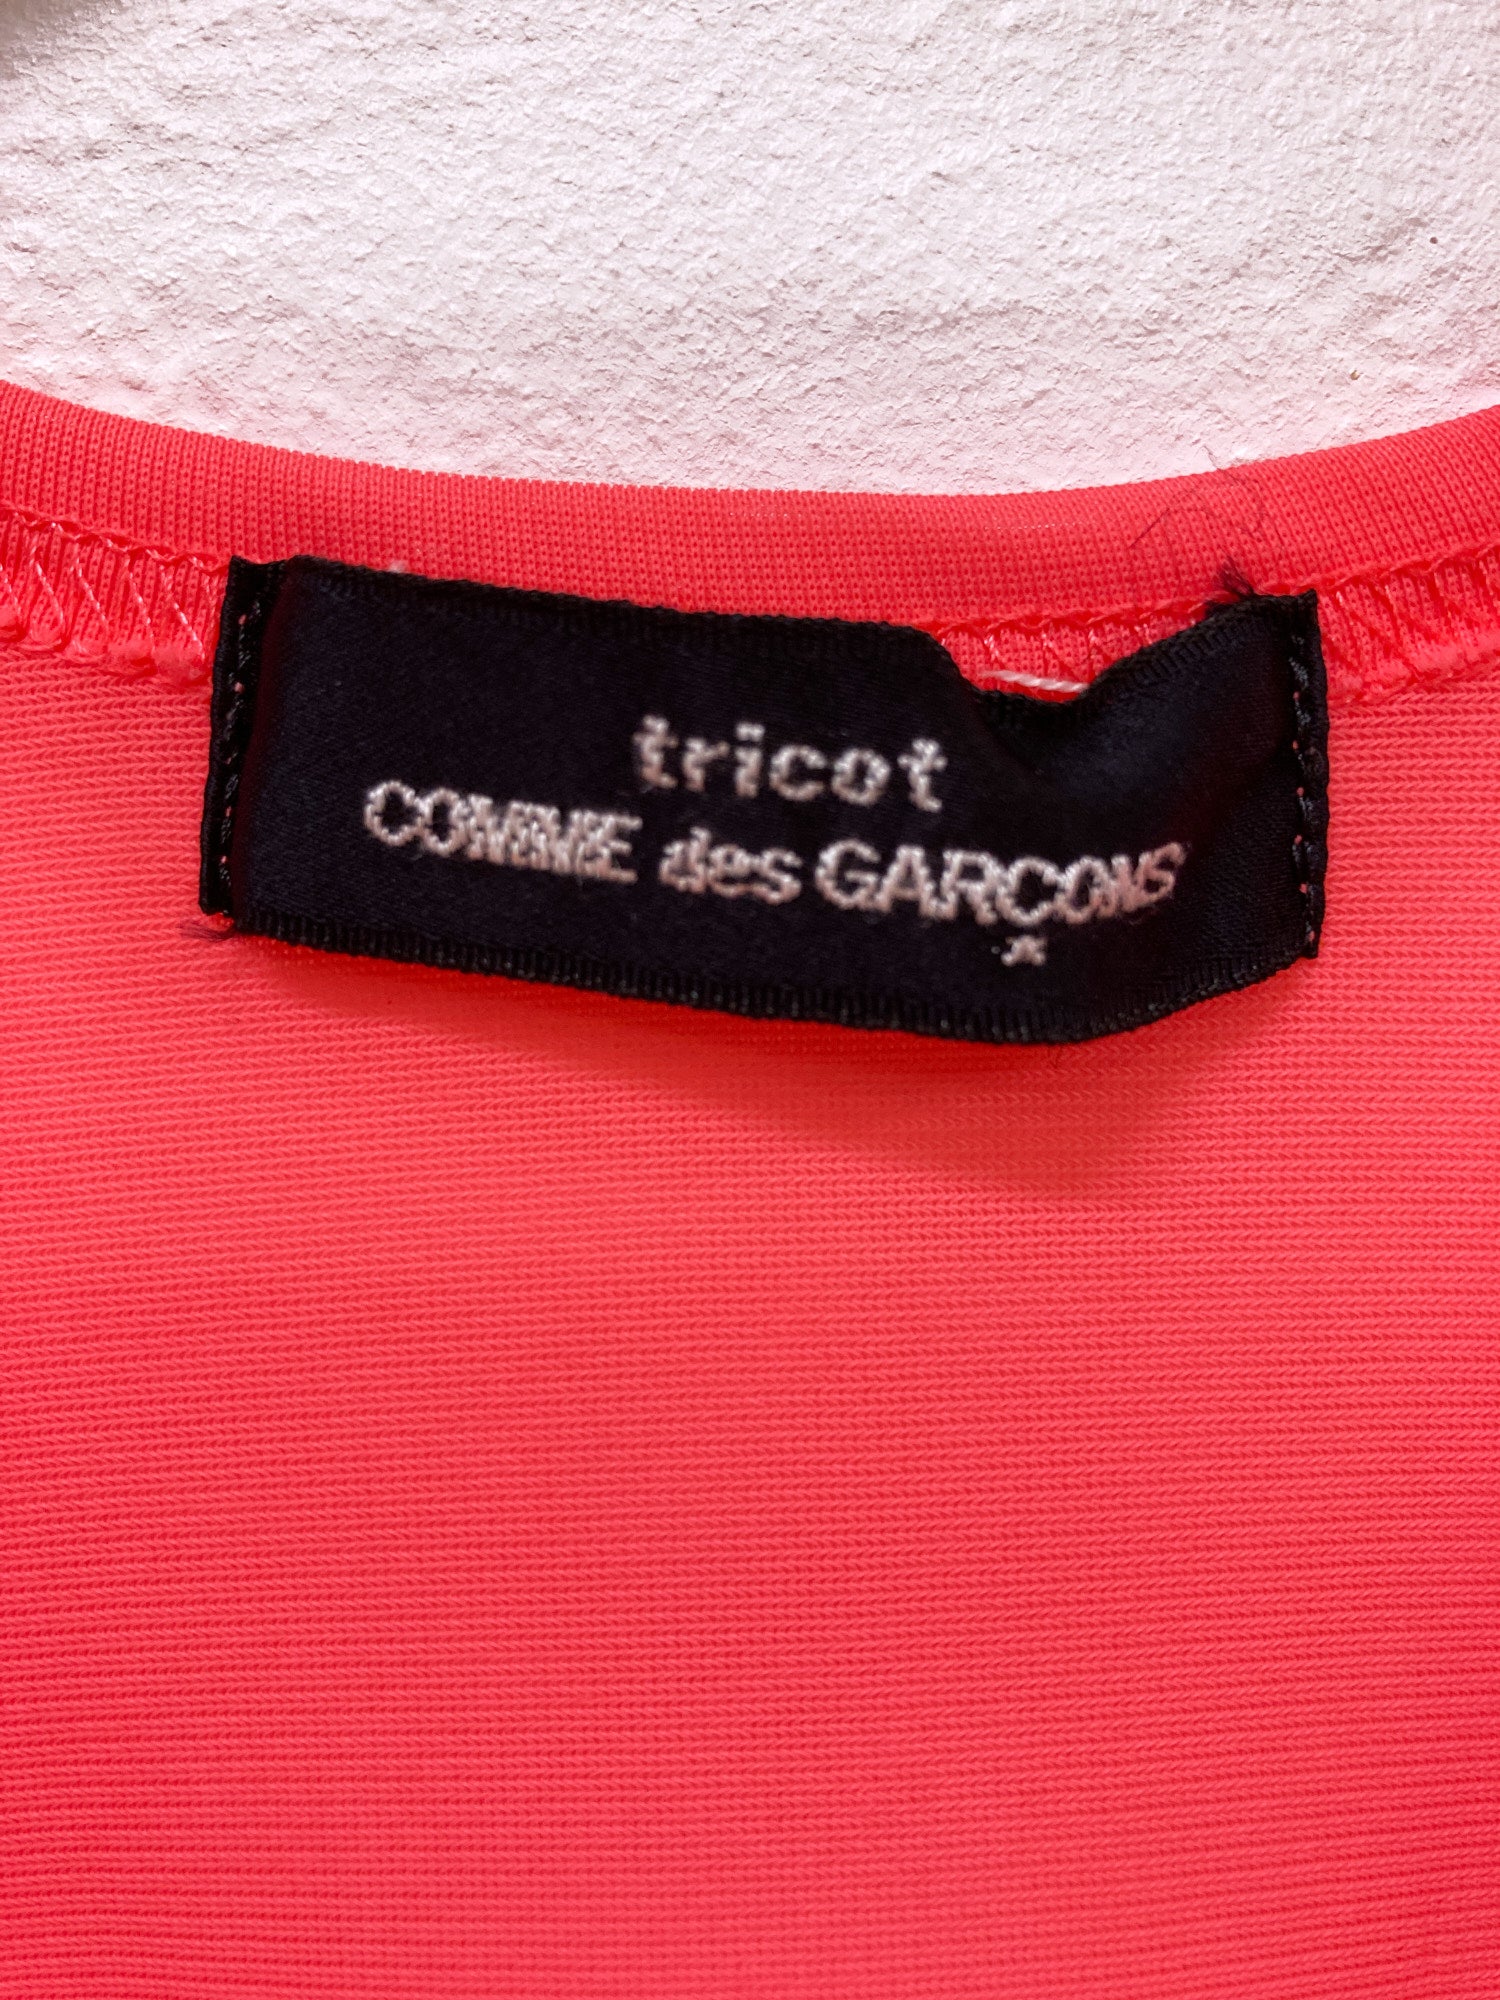 Tricot Comme des Garcons 1994 fluorescent pink nylon singlet